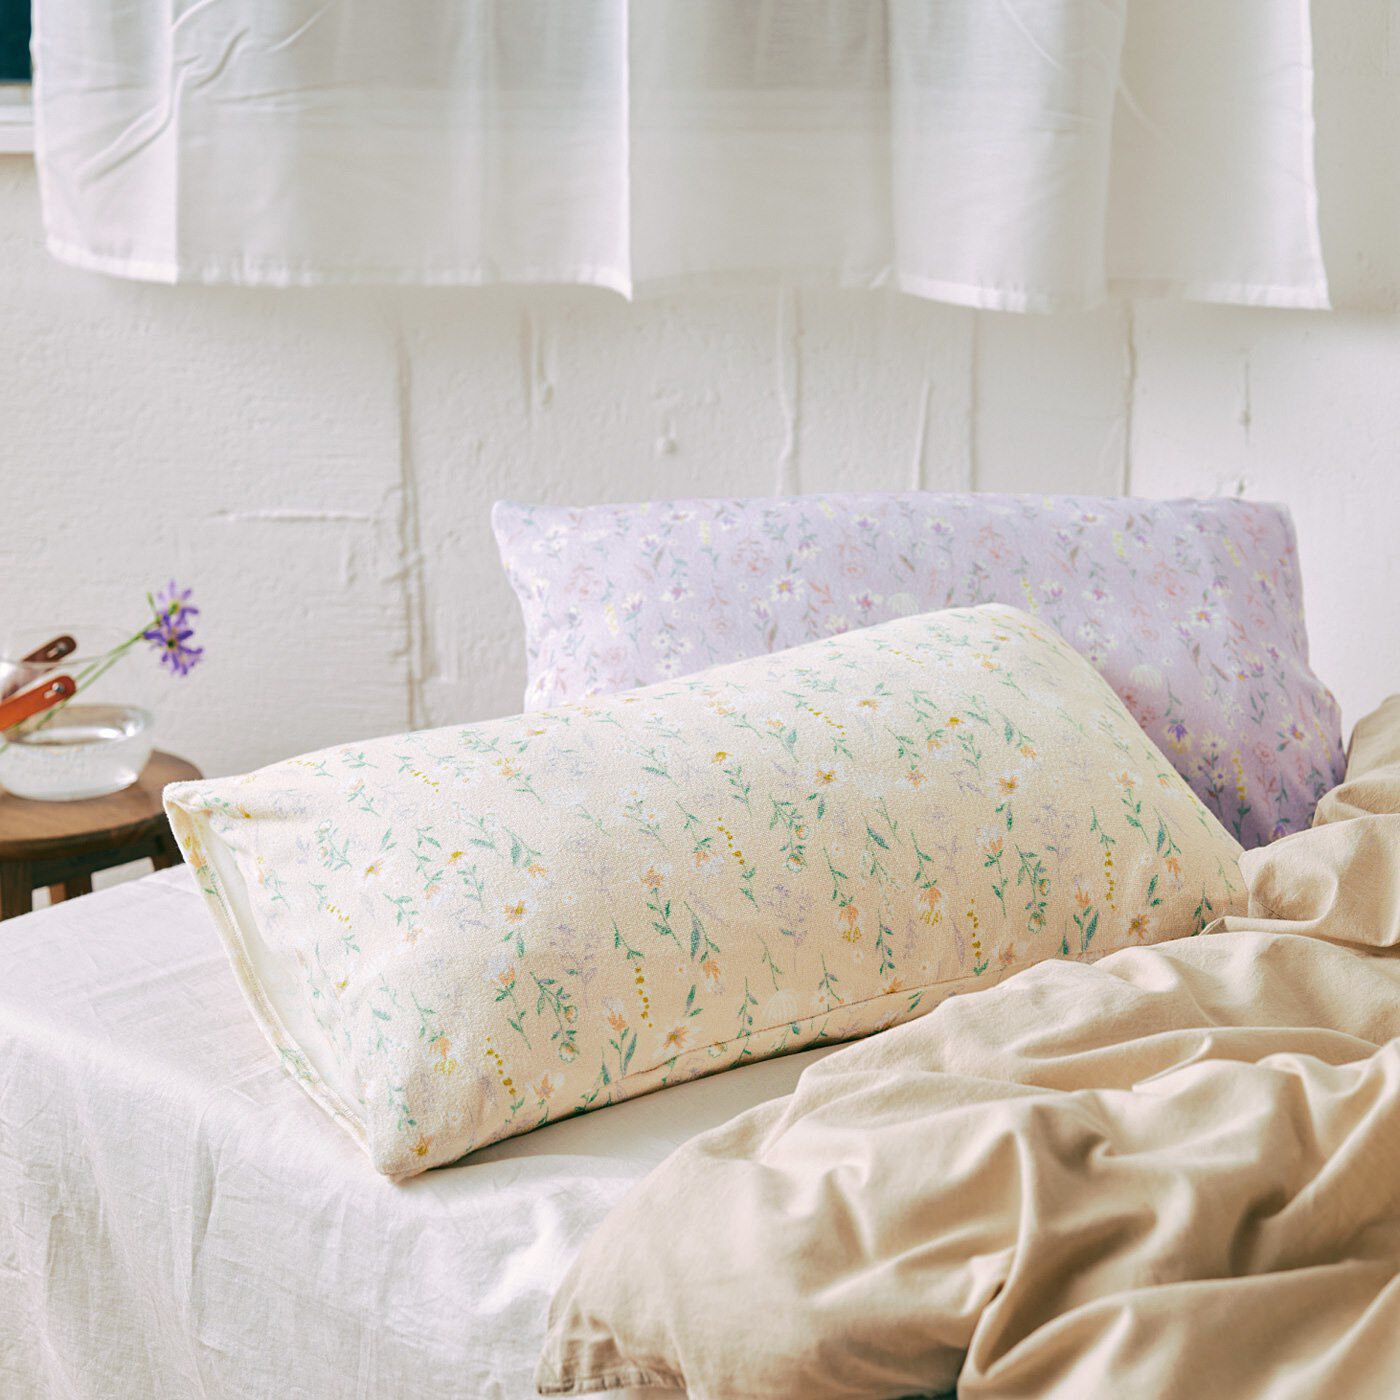 フェリシモの雑貨 Kraso|クーフゥ　心地よい肌あたりで軽やかに舞う花々に包まれる ぴったりフィット さらりパイルの枕カバーの会|寝室にやさしくなじむデザインで、くつろぎの眠りを。